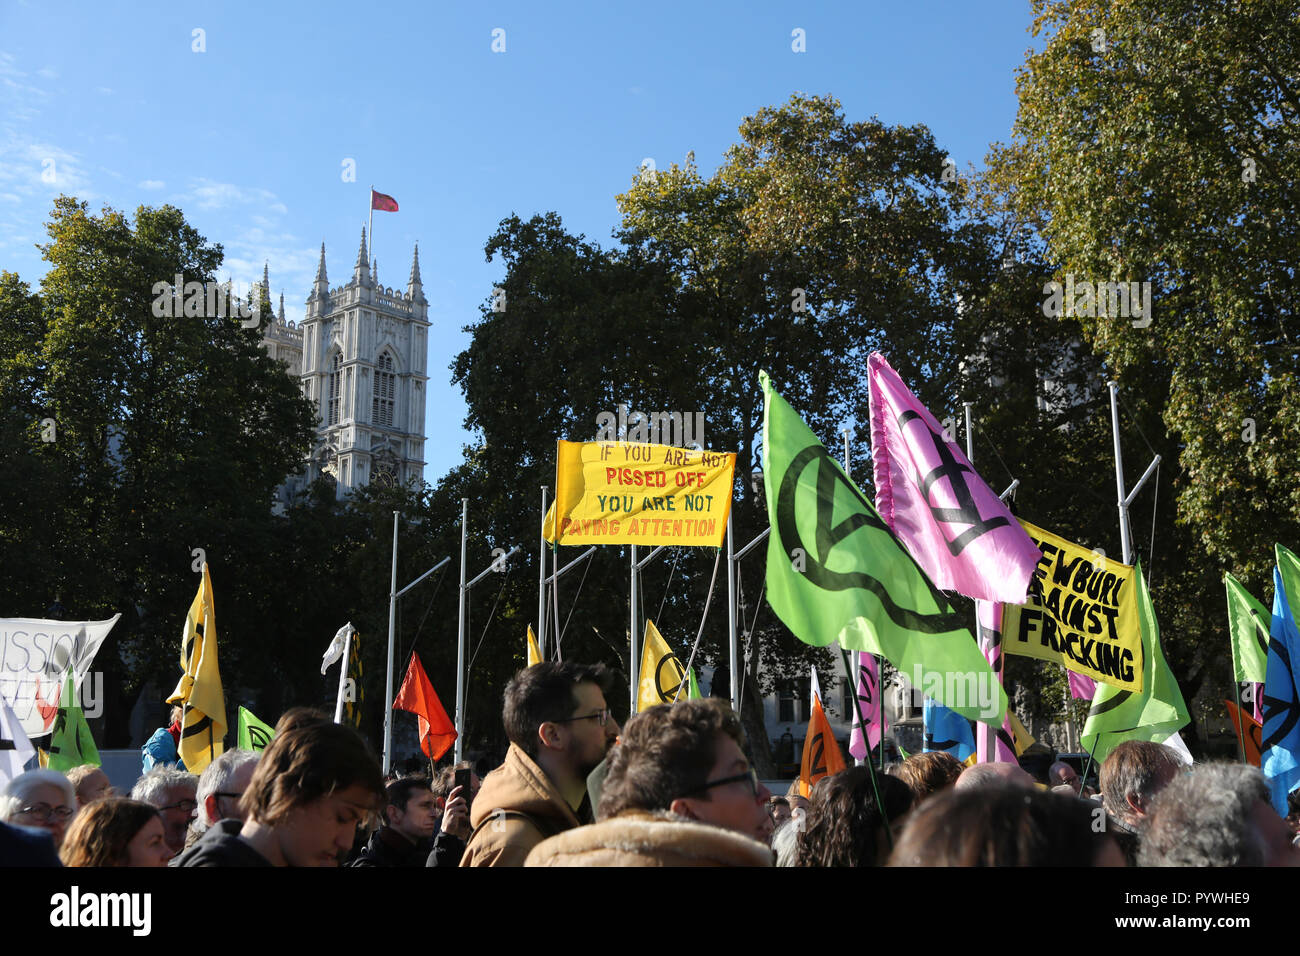 La rébellion contre l'Extinction organisé au Parlement Sqare London UK Banque D'Images